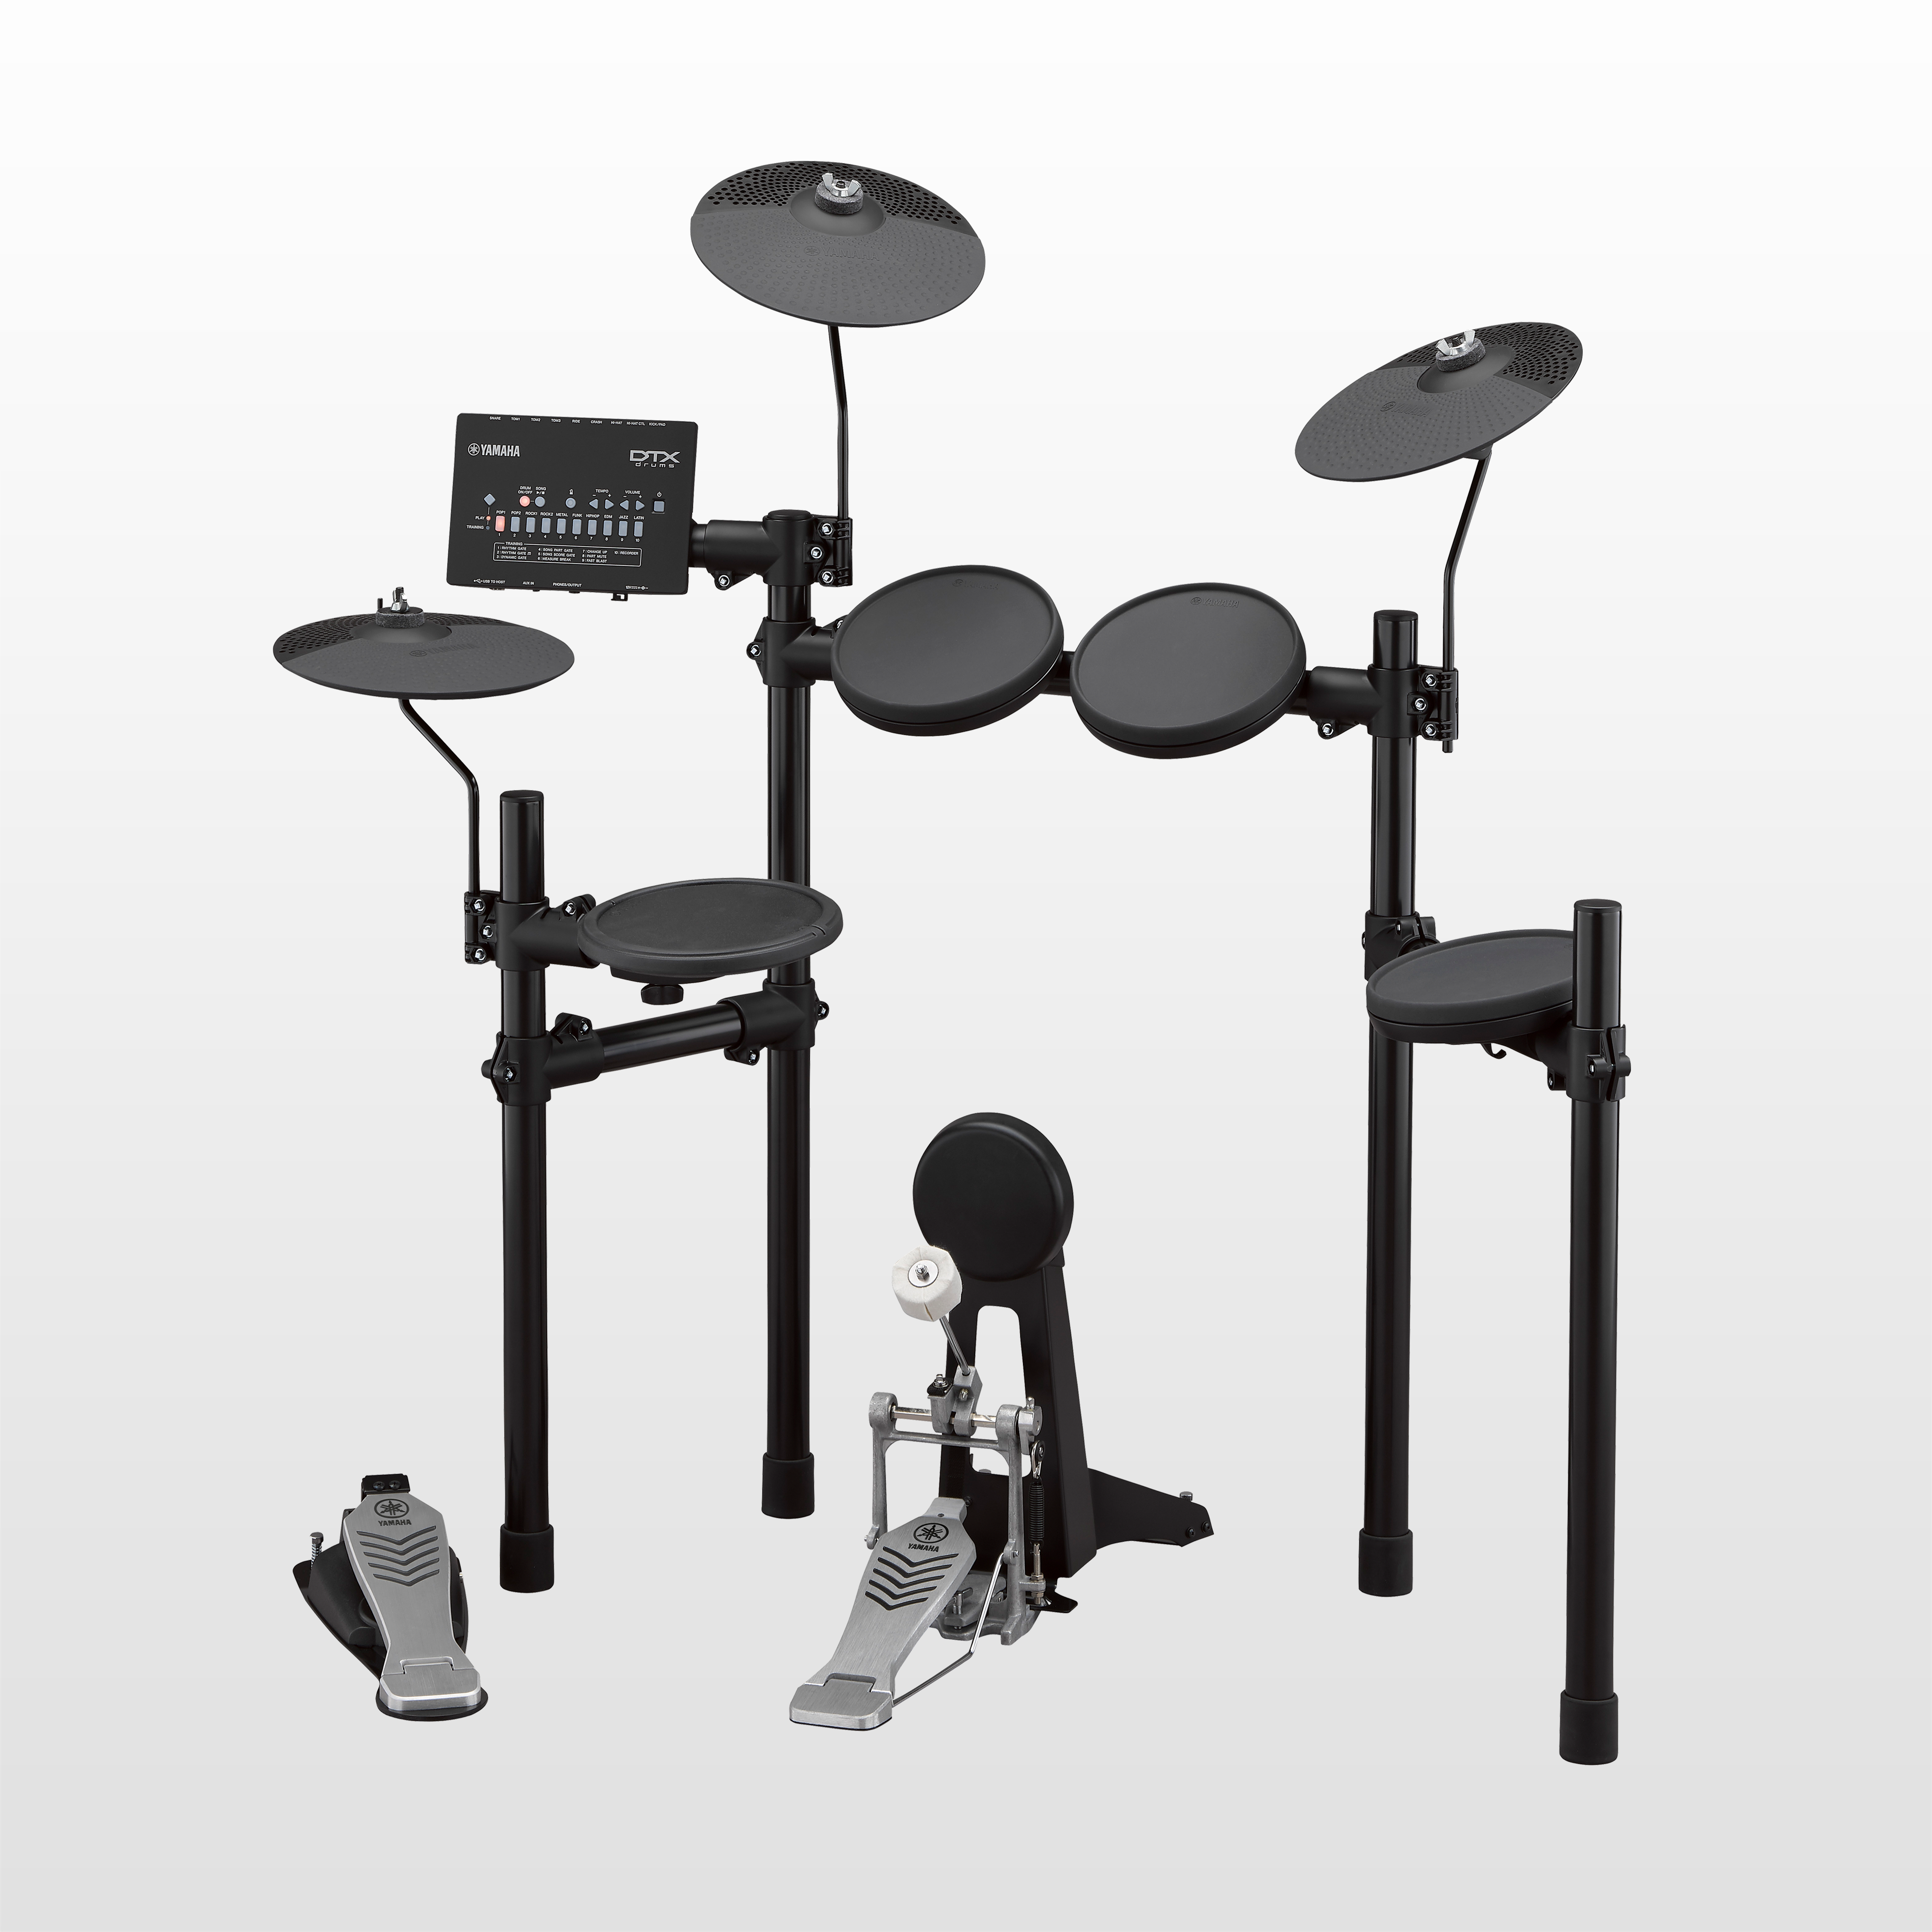 DTX402 시리즈 - 제품 - 전자 드럼 키트 - 일렉트로닉 드럼 - 드럼 - 악기 ...